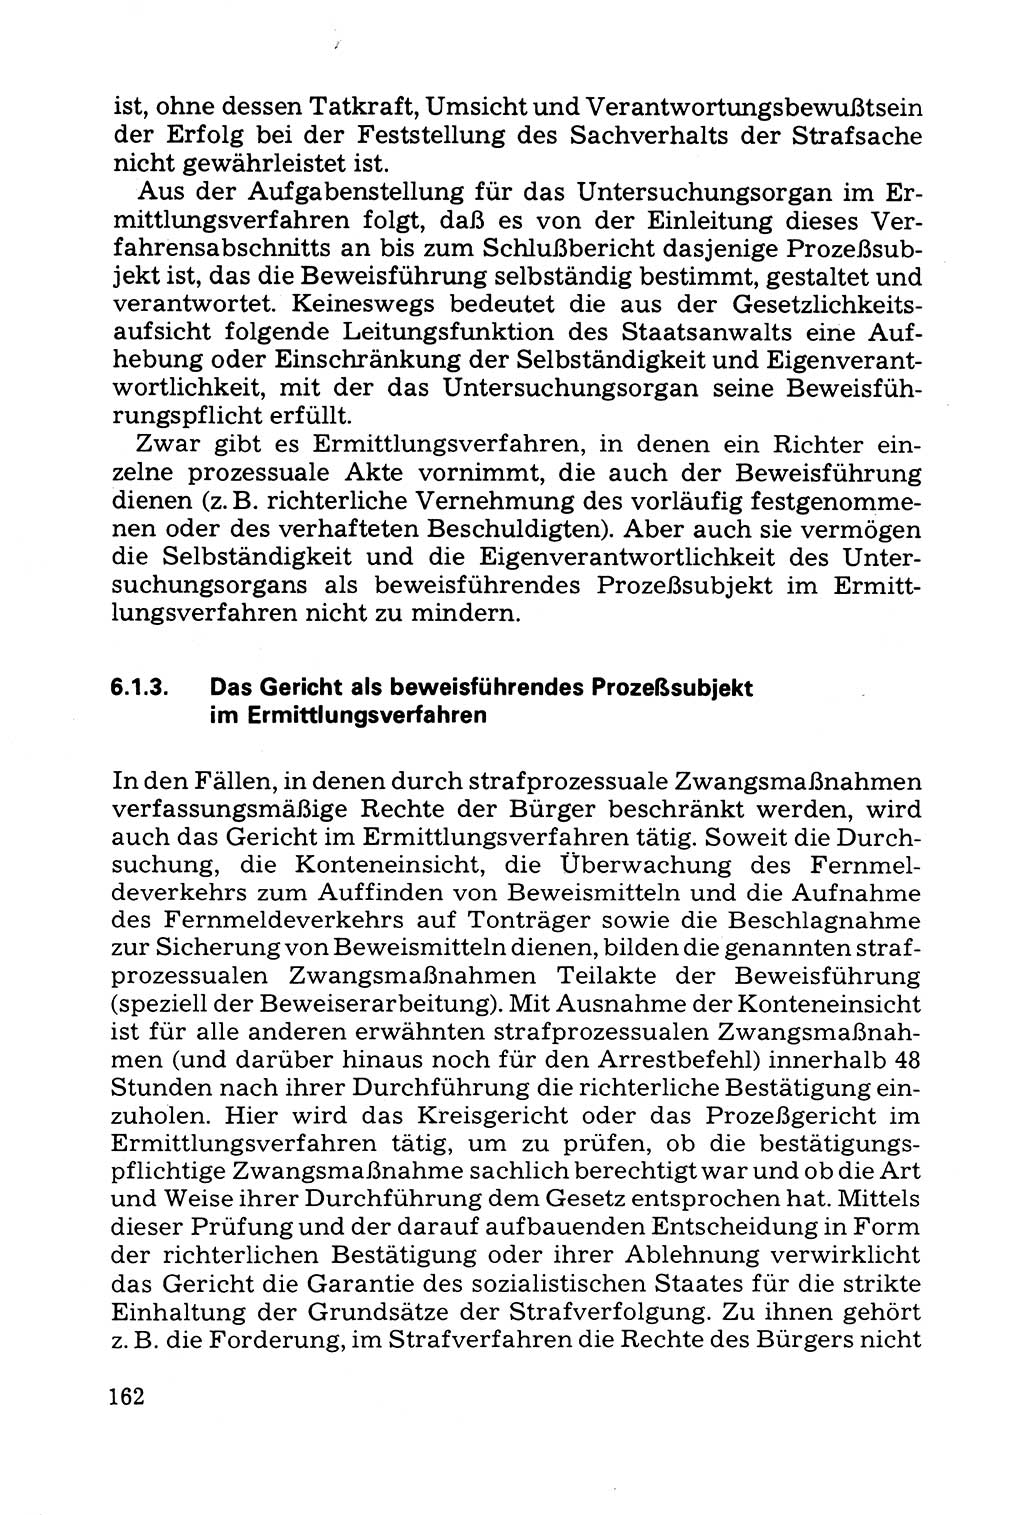 Grundfragen der Beweisführung im Ermittlungsverfahren [Deutsche Demokratische Republik (DDR)] 1980, Seite 162 (Bws.-Fhrg. EV DDR 1980, S. 162)